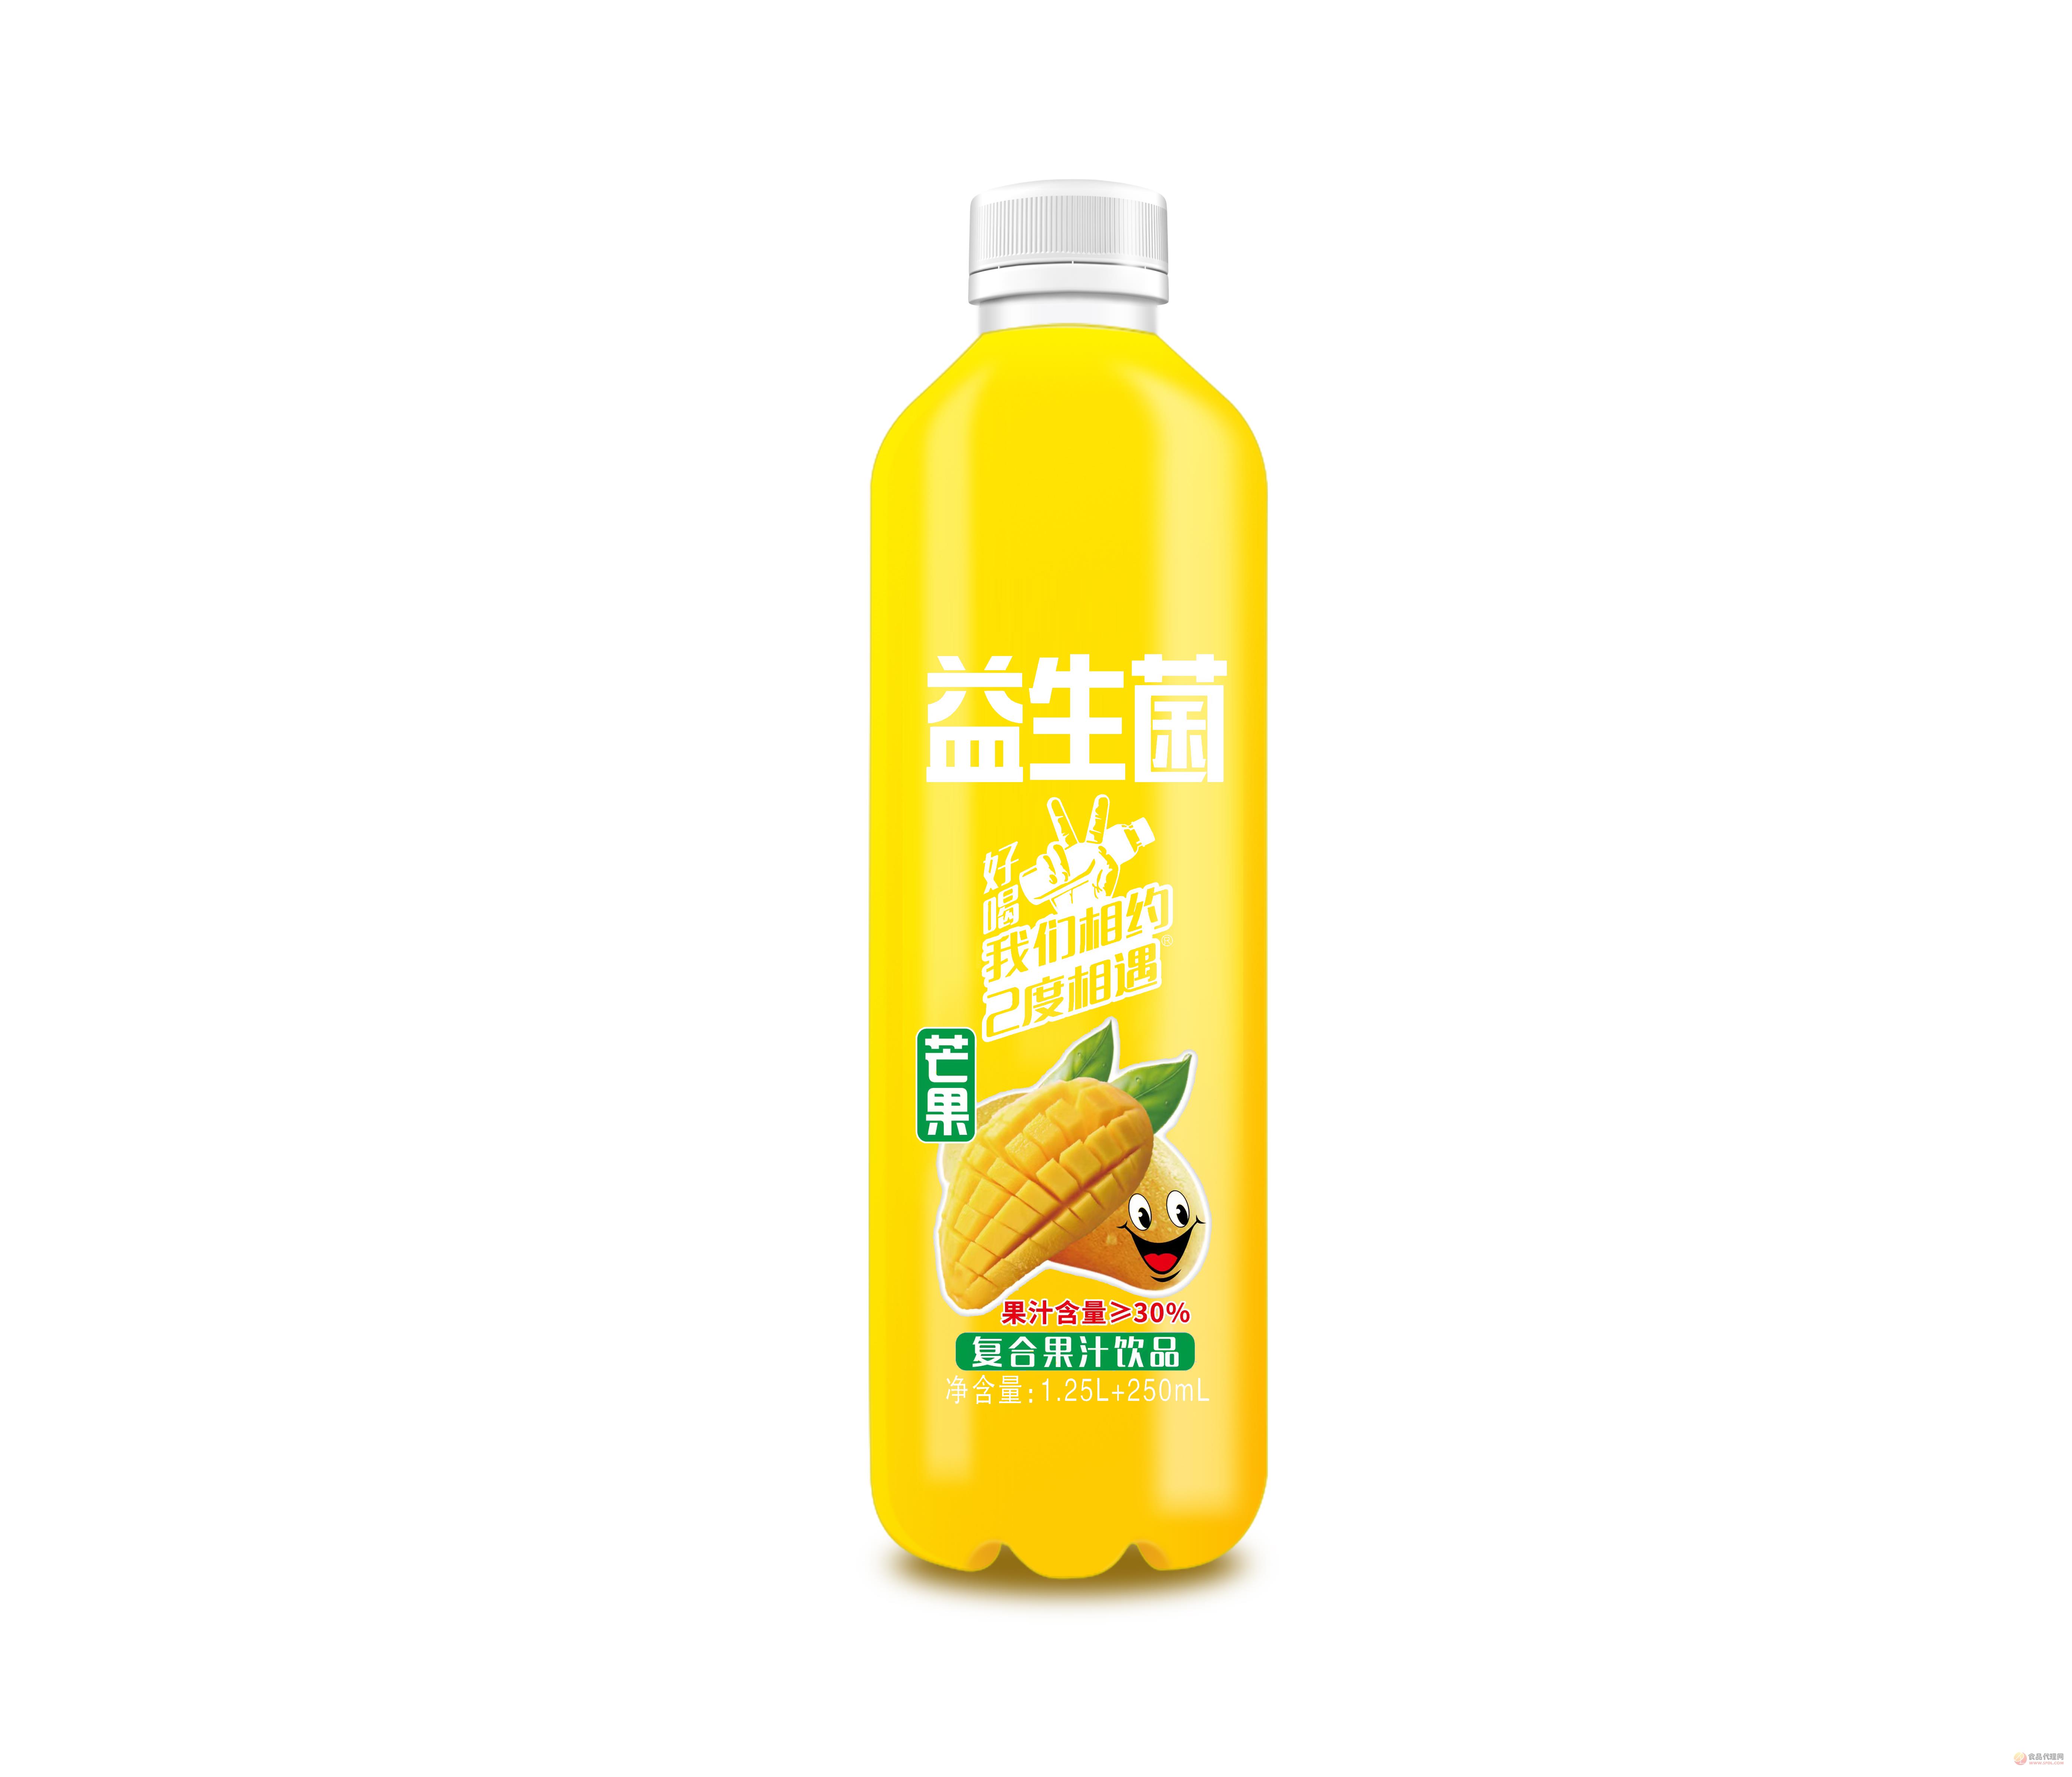 益生菌复合果汁芒果味1.25L+250ml